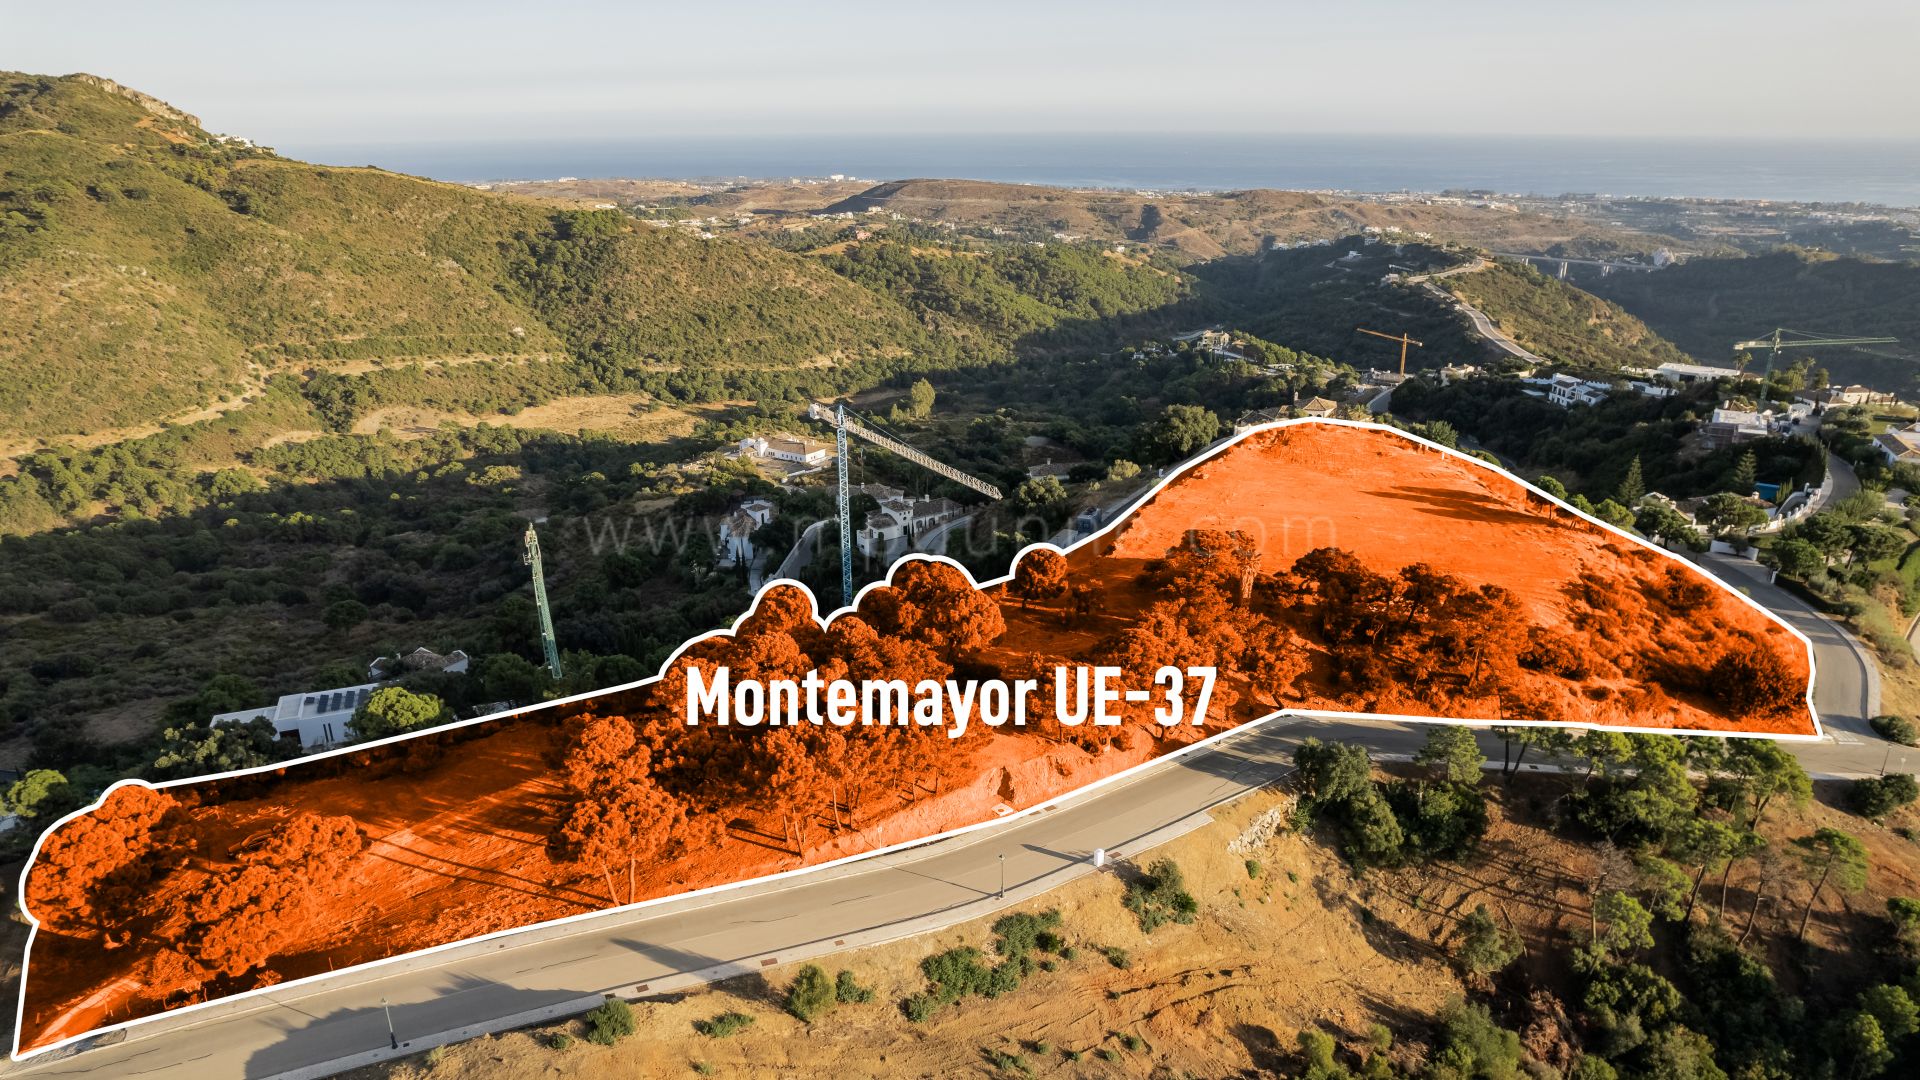 Terrain de Monte Mayor avec vue panoramique à 360 degrés